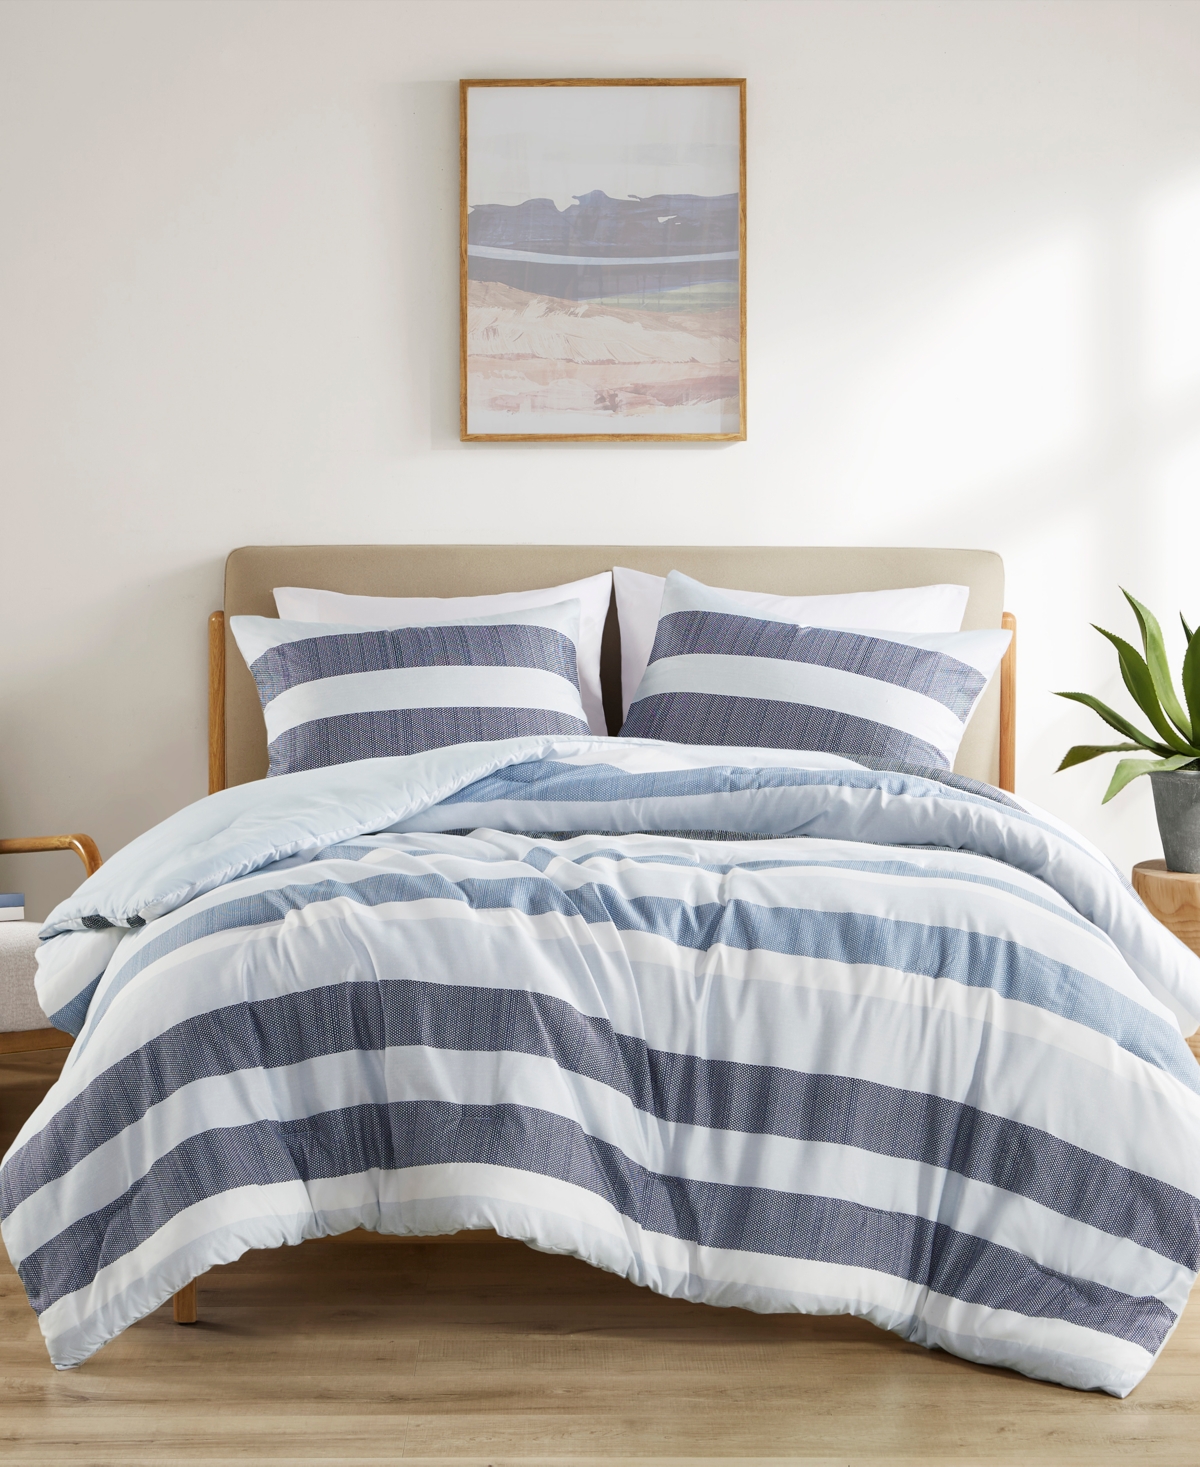 510 Design Blake Stripe Textured Print 3-pc. Comforter Set, King/cal King In Navy,blue